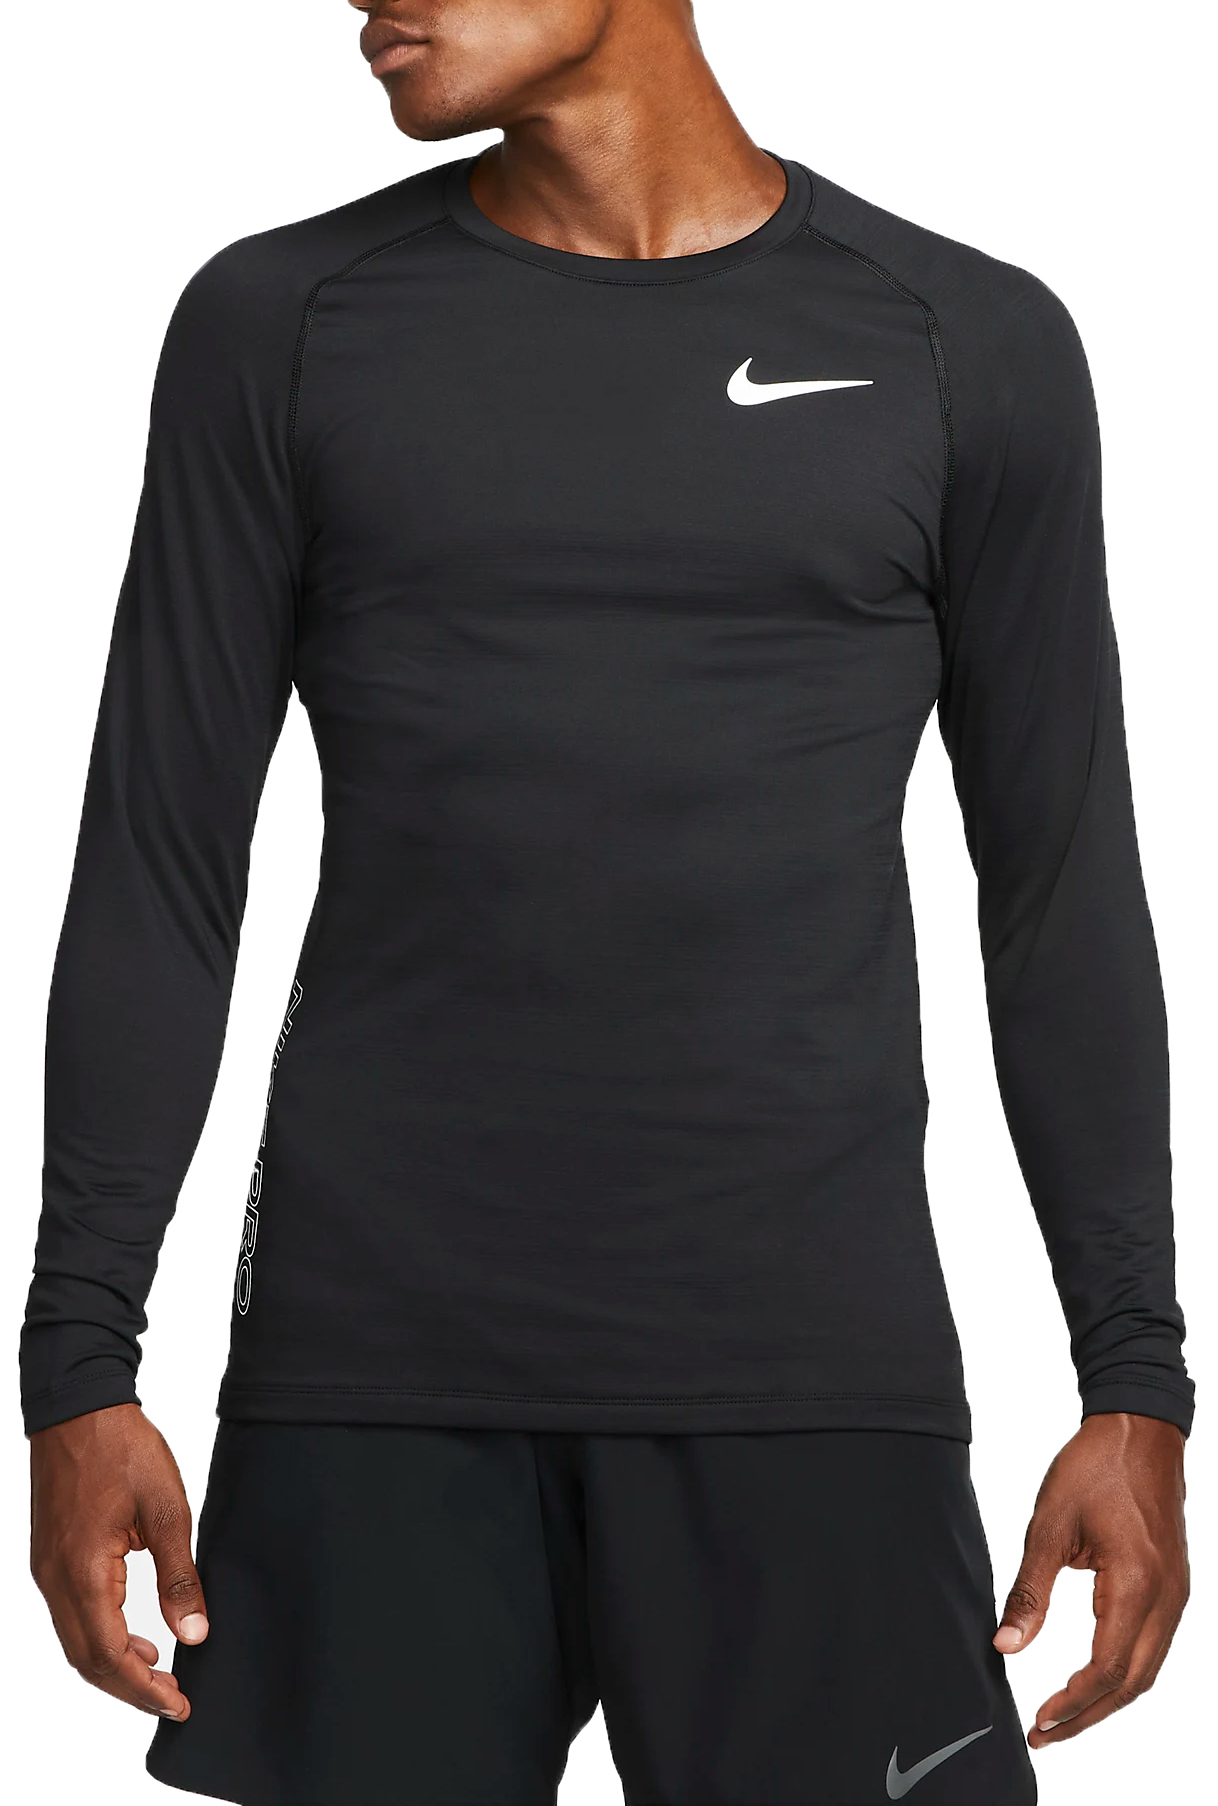 Tričko s dlhým rukávom Nike Pro Warm Sweatshirt Schwarz F010